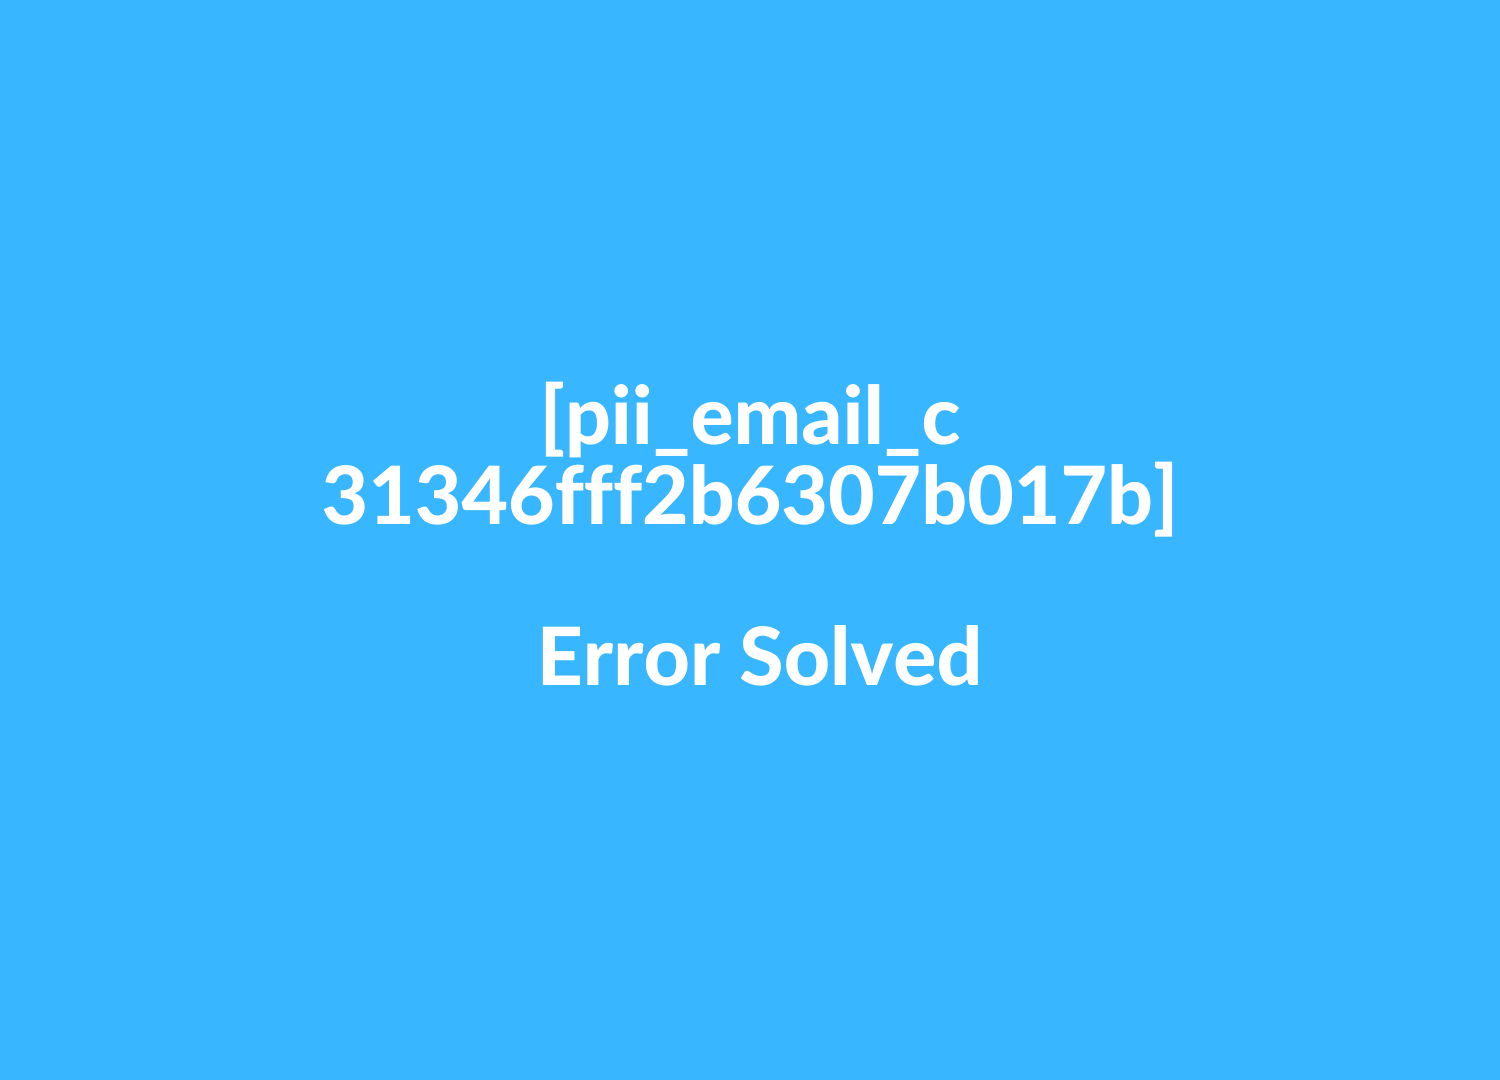  [pii_email_c31346fff2b6307b017b] Error Solved